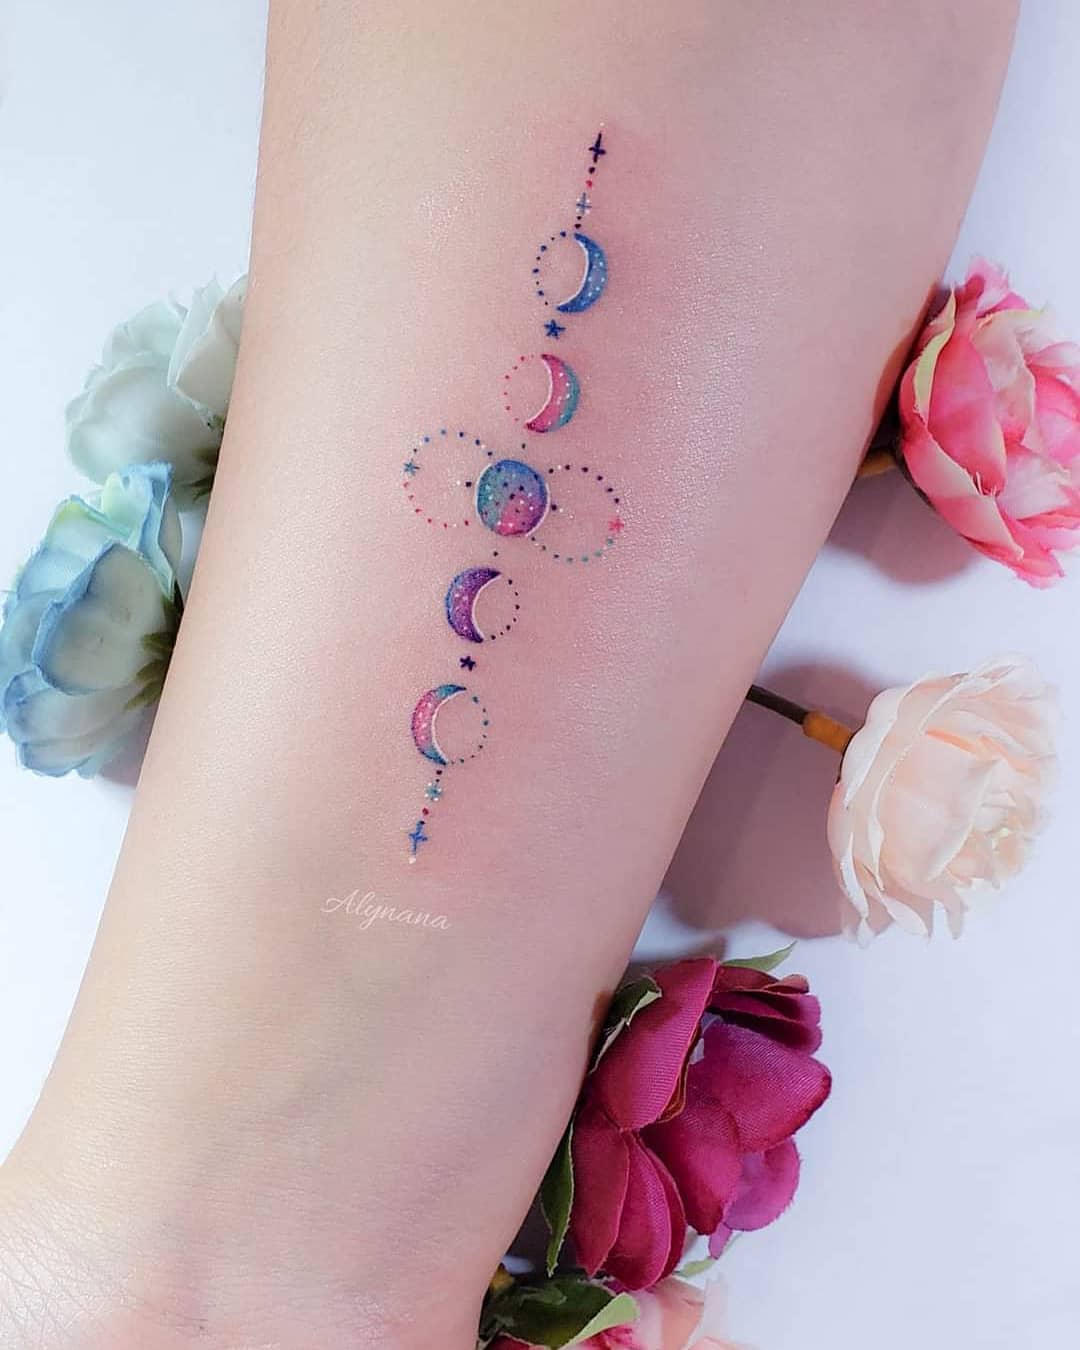 157 Tatuajes Delicados Coloridos Artista Alynana Fases Lunares con pequenos puntos y estrellas en antebrazo